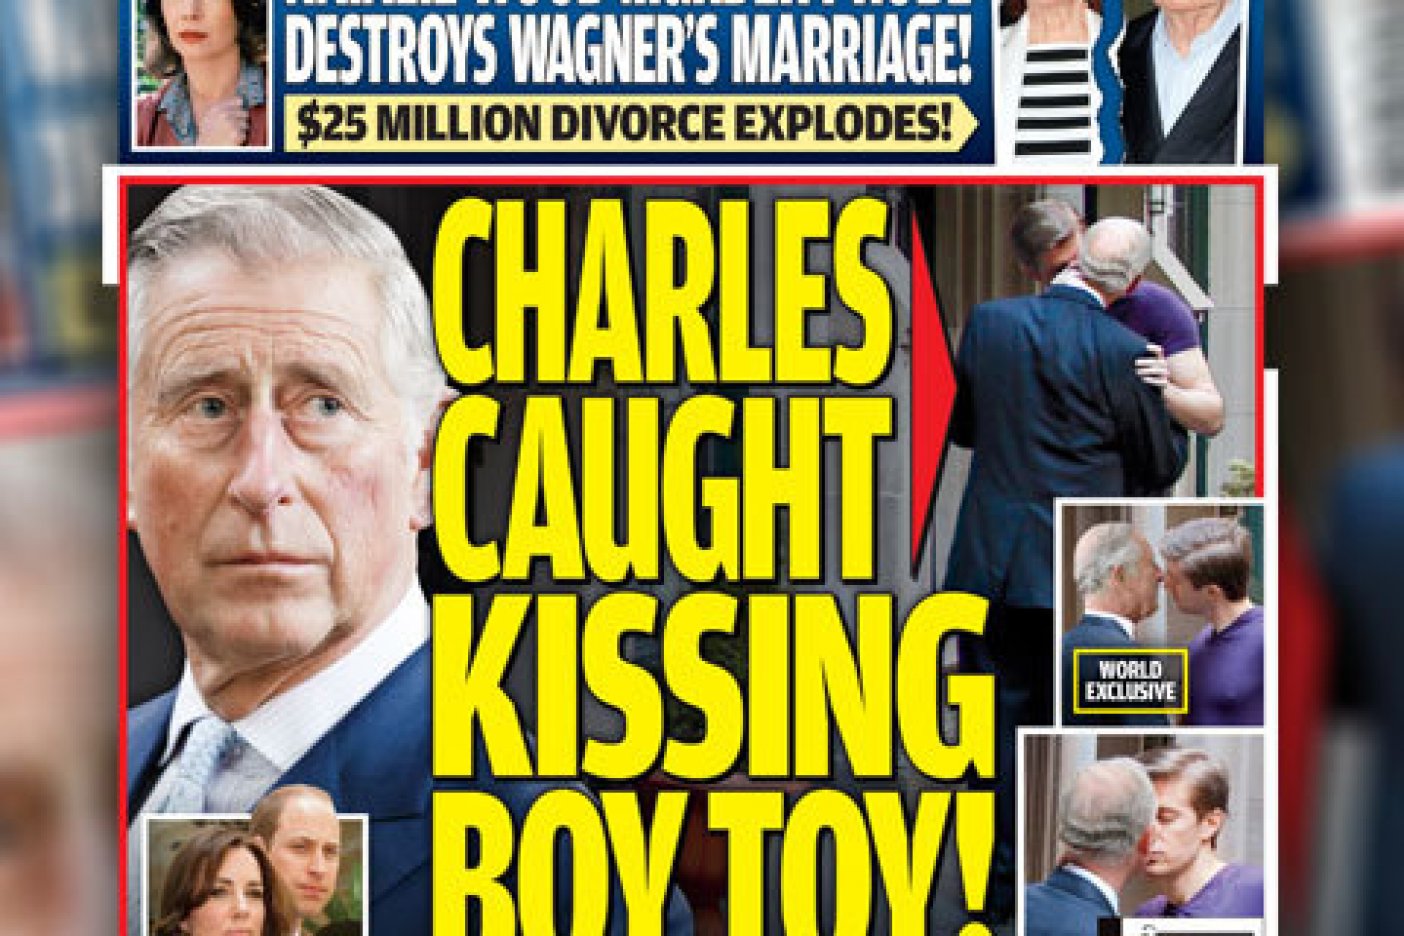  Beso de príncipe Carlos a otro hombre podría costarle la corona